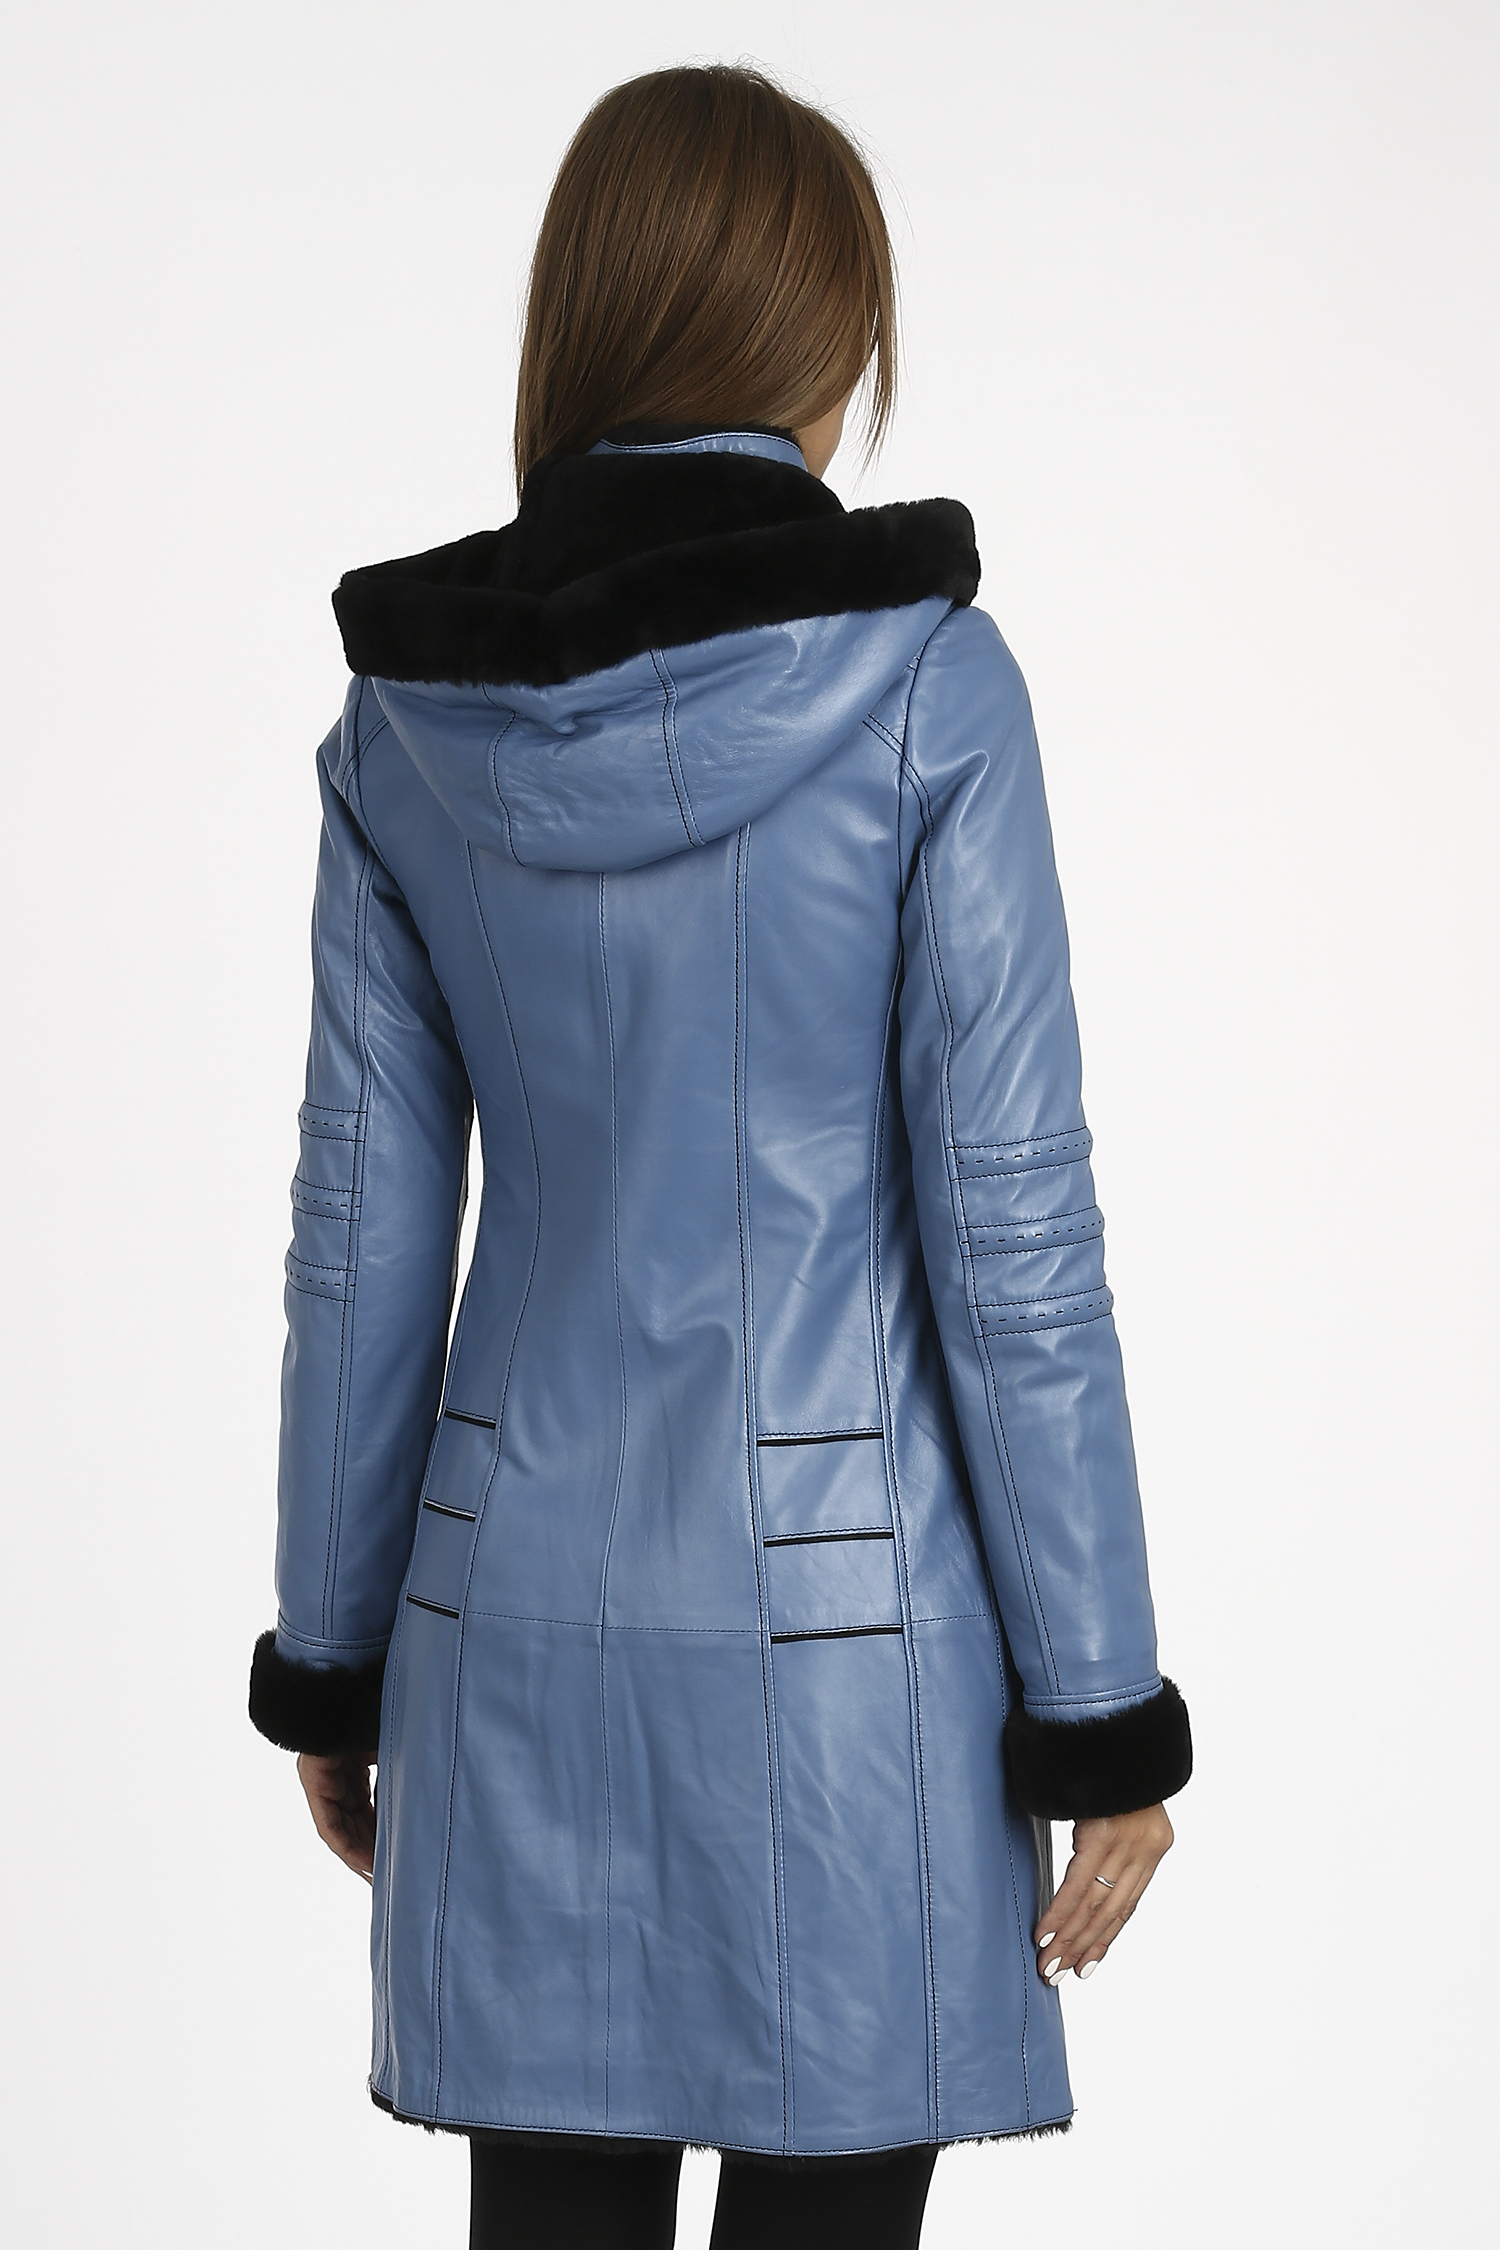 Женская кожаная куртка из натуральной кожи на меху с капюшоном, без отделки